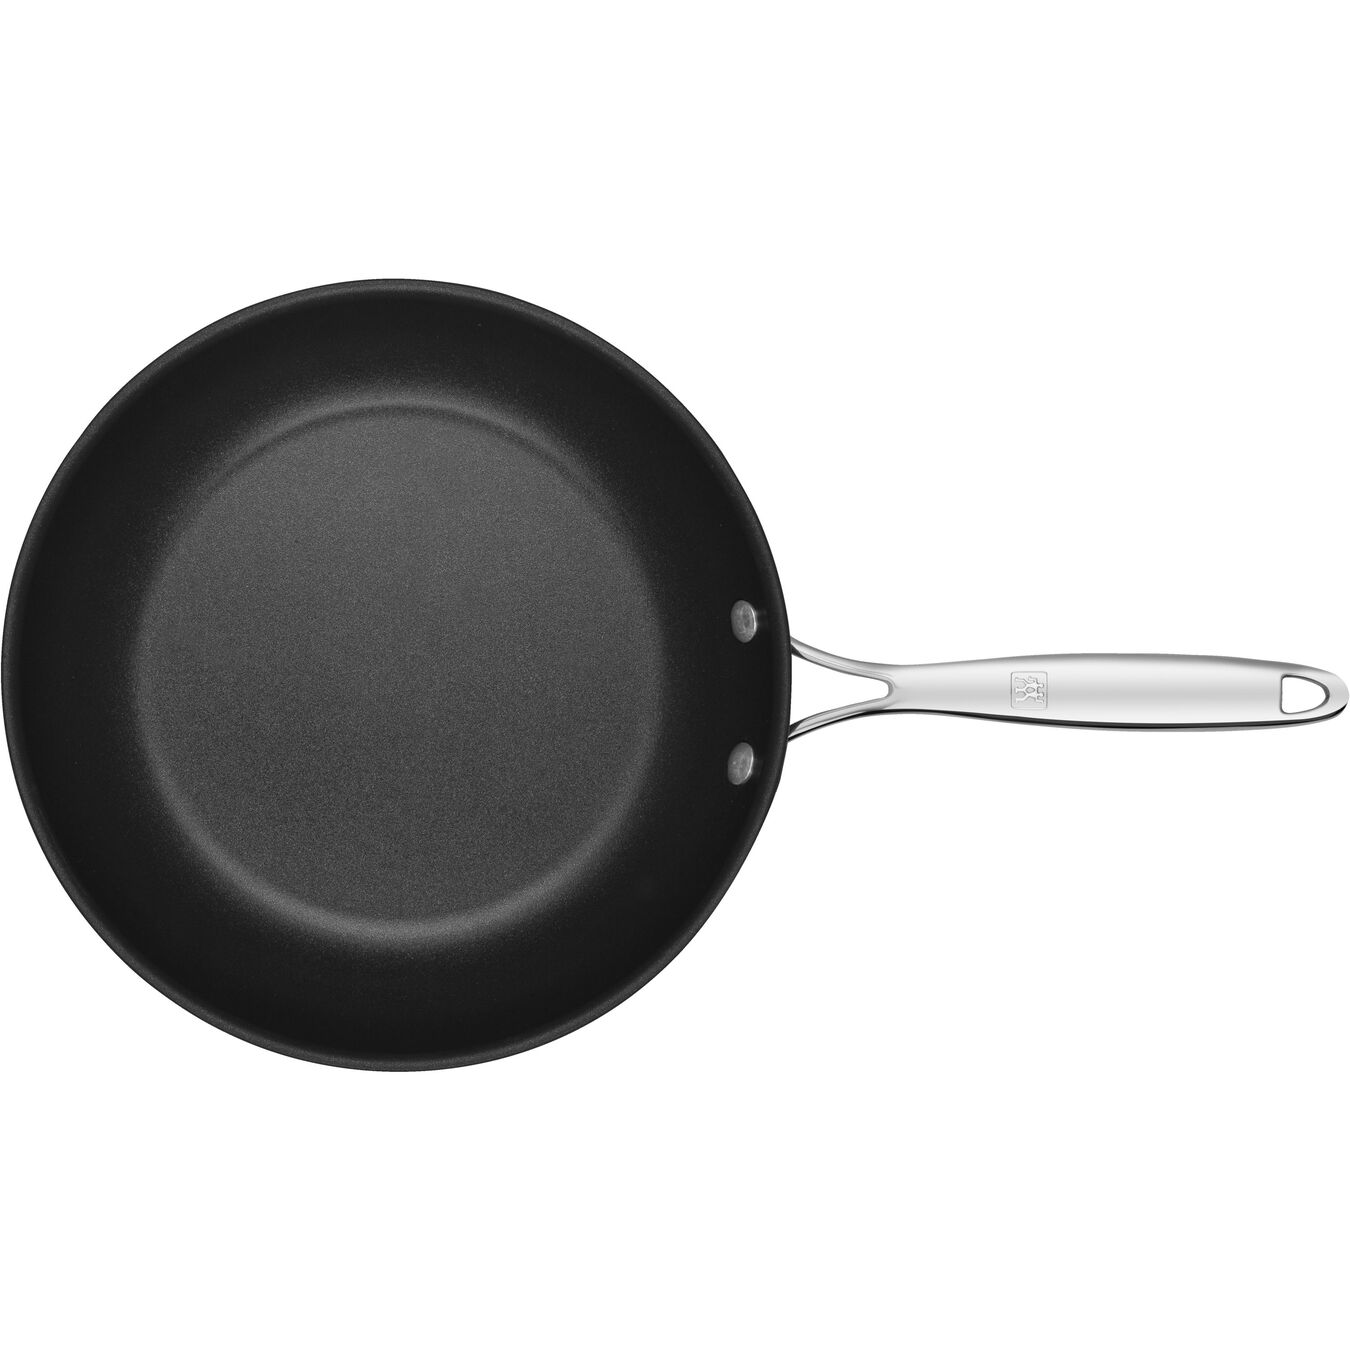 26 cm / 10 inch aluminium Frying pan,,large 4